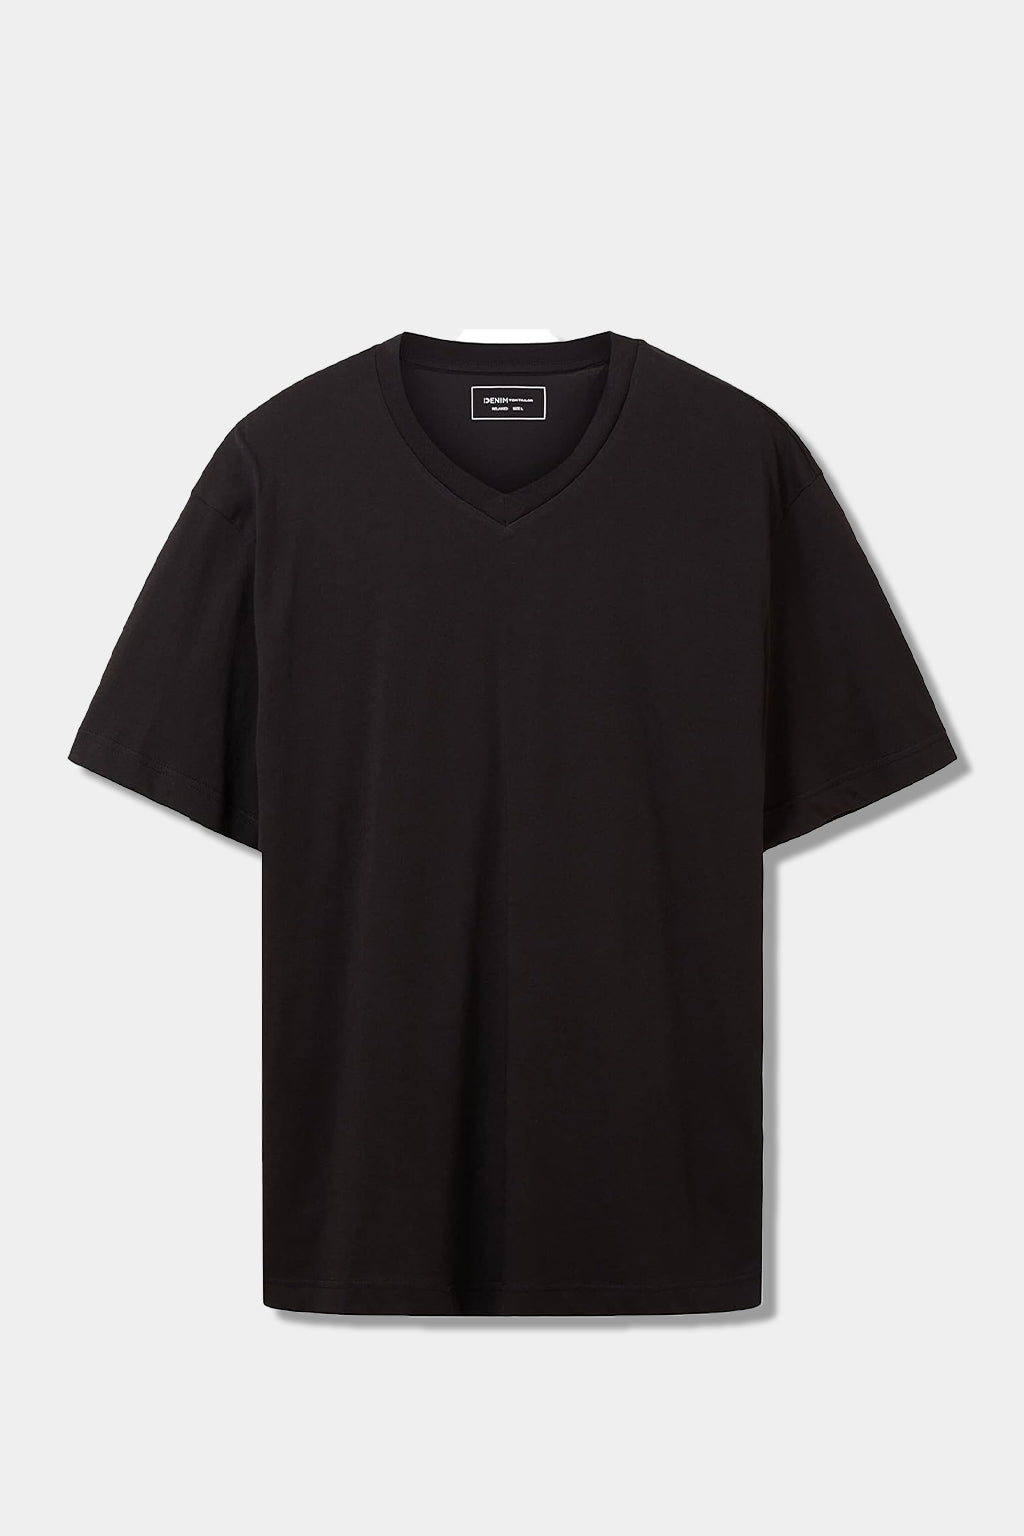 Tom Tailor - Denim Men's Relaxed Fit V-neck T-shirt